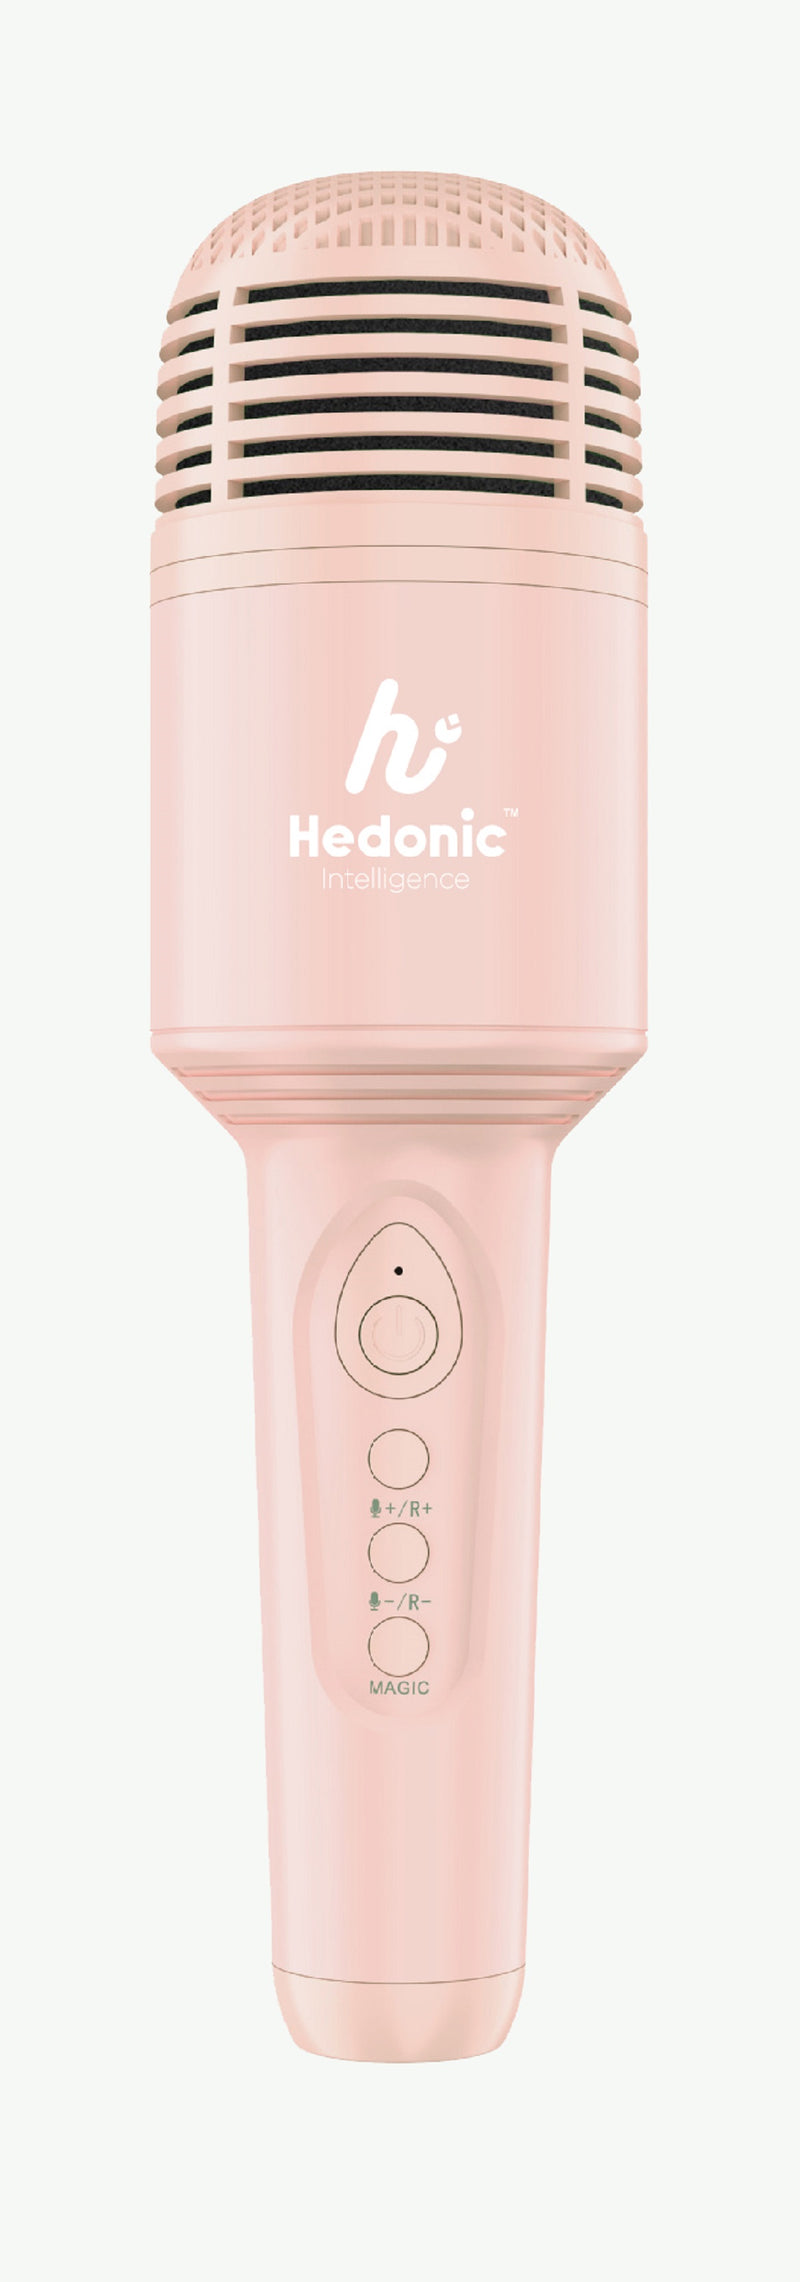 Hedonic Karaoke Microphone